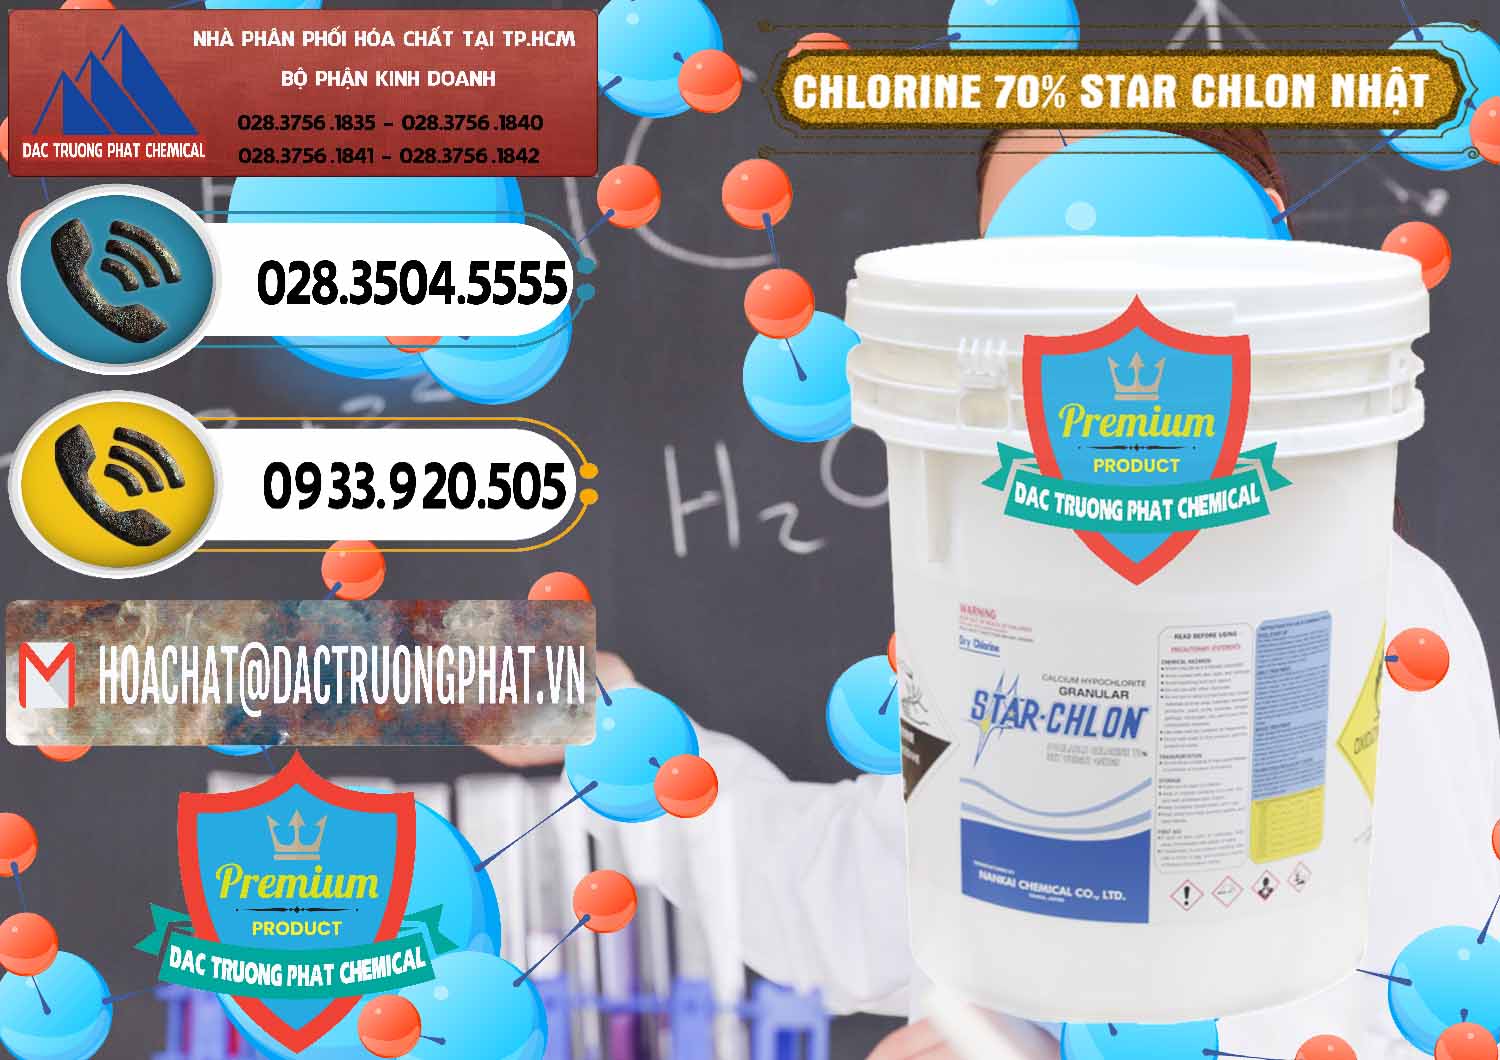 Công ty chuyên bán ( cung cấp ) Clorin – Chlorine 70% Star Chlon Nhật Bản Japan - 0243 - Nhà nhập khẩu & cung cấp hóa chất tại TP.HCM - hoachatdetnhuom.vn